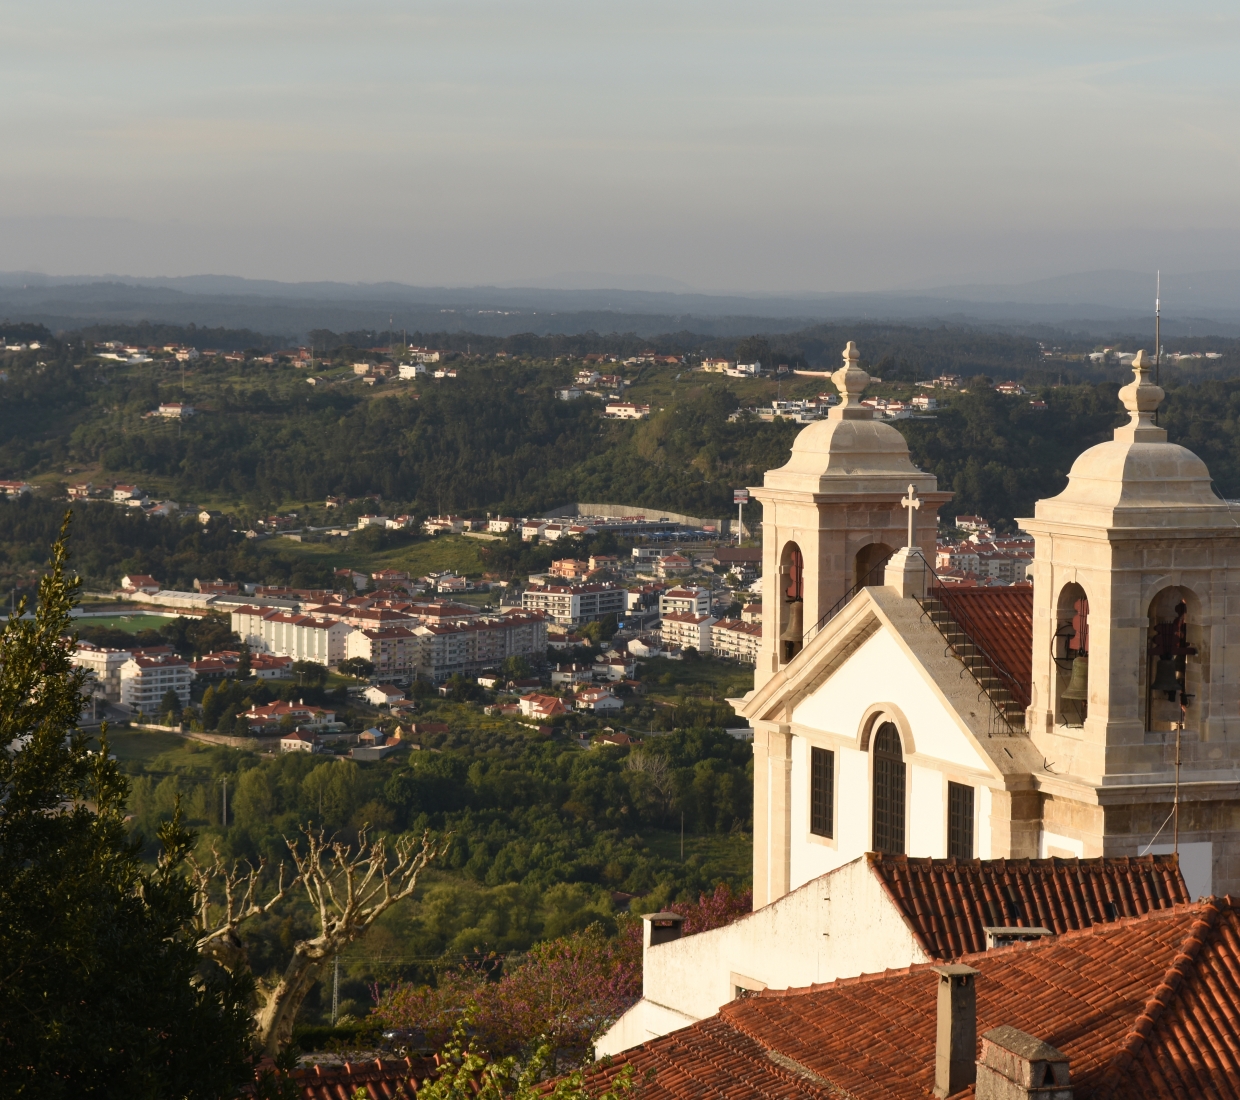 Seleção dos melhores e mais bonitos hotéis e casas de férias em Beiras e Costa Central